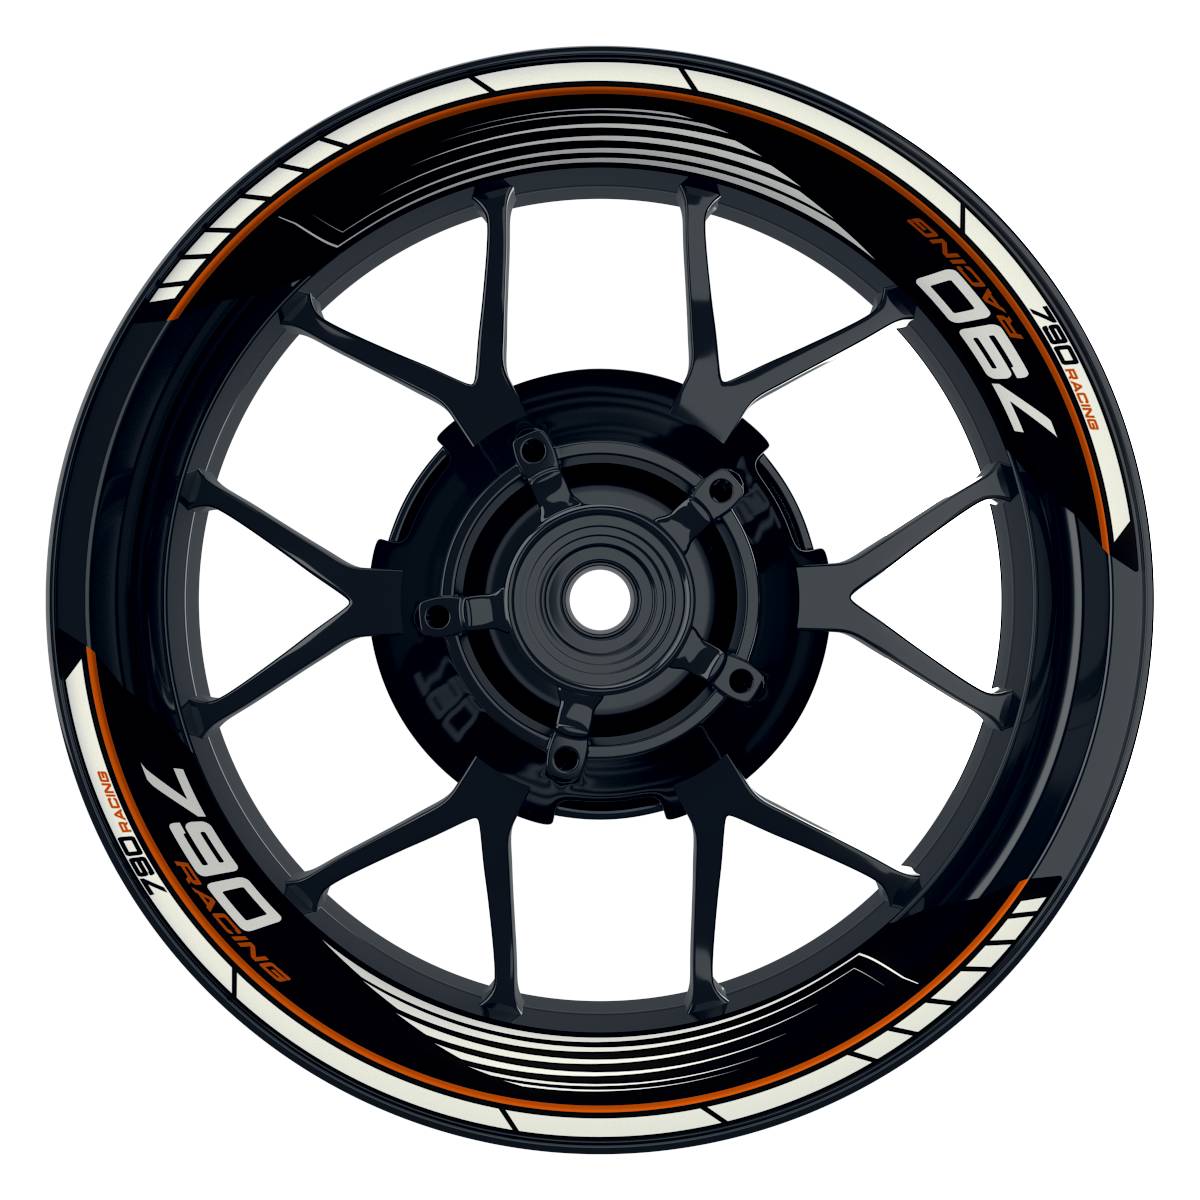 KTM Racing 790 SAW schwarz orange Frontansicht